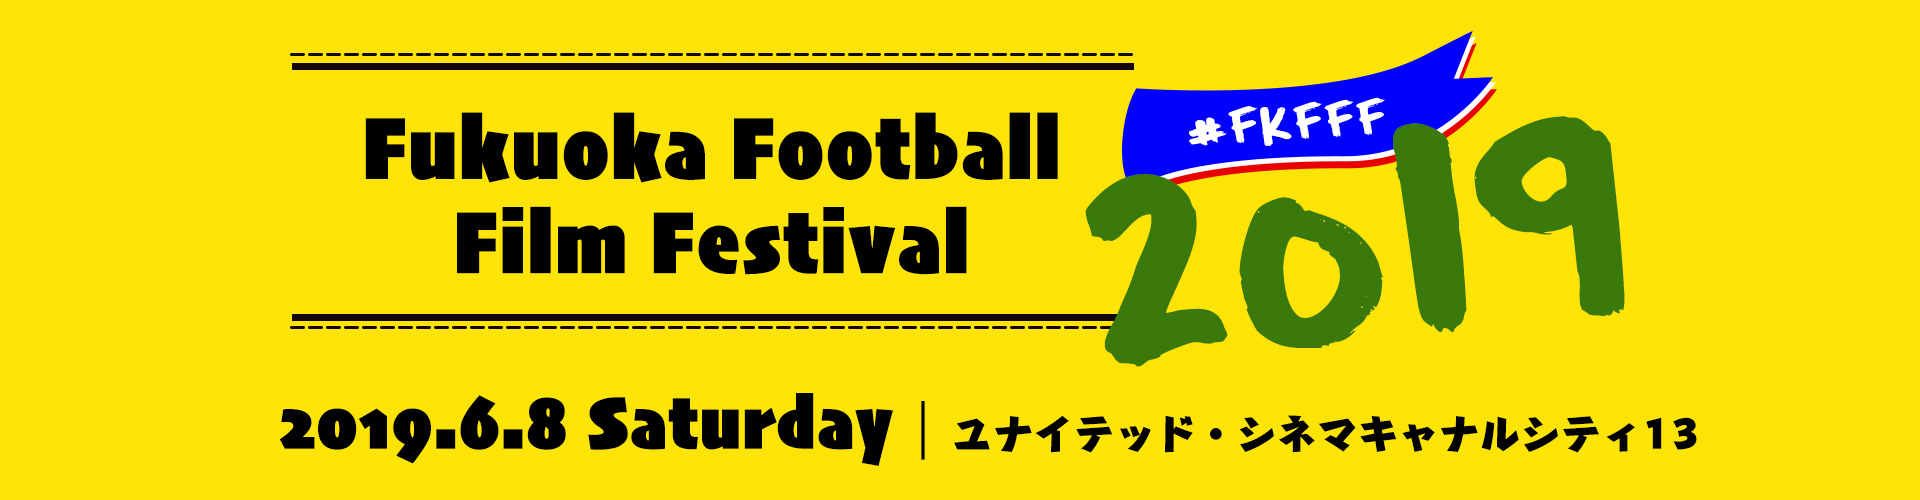 福岡フットボール映画祭2018 日時：2018年5月26日土曜日 場所：ユナイテッド・シネマ キャナルシティ13